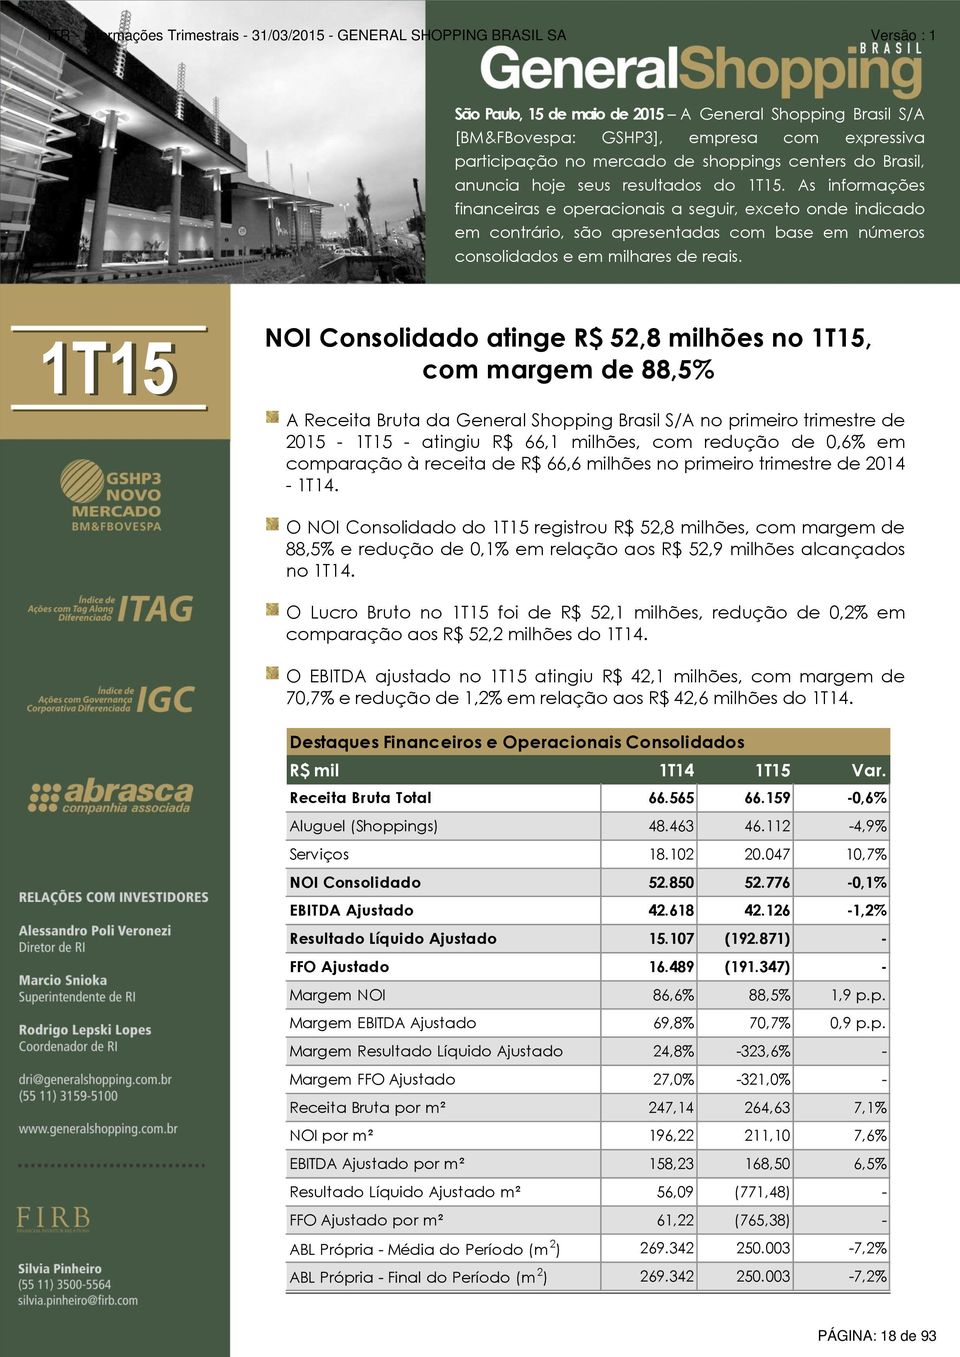 1T15 NOI Consolidado atinge R$ 52,8 milhões no 1T15, com margem de 88,5% A Receita Bruta da General Shopping Brasil S/A no primeiro trimestre de 2015-1T15 - atingiu R$ 66,1 milhões, com redução de